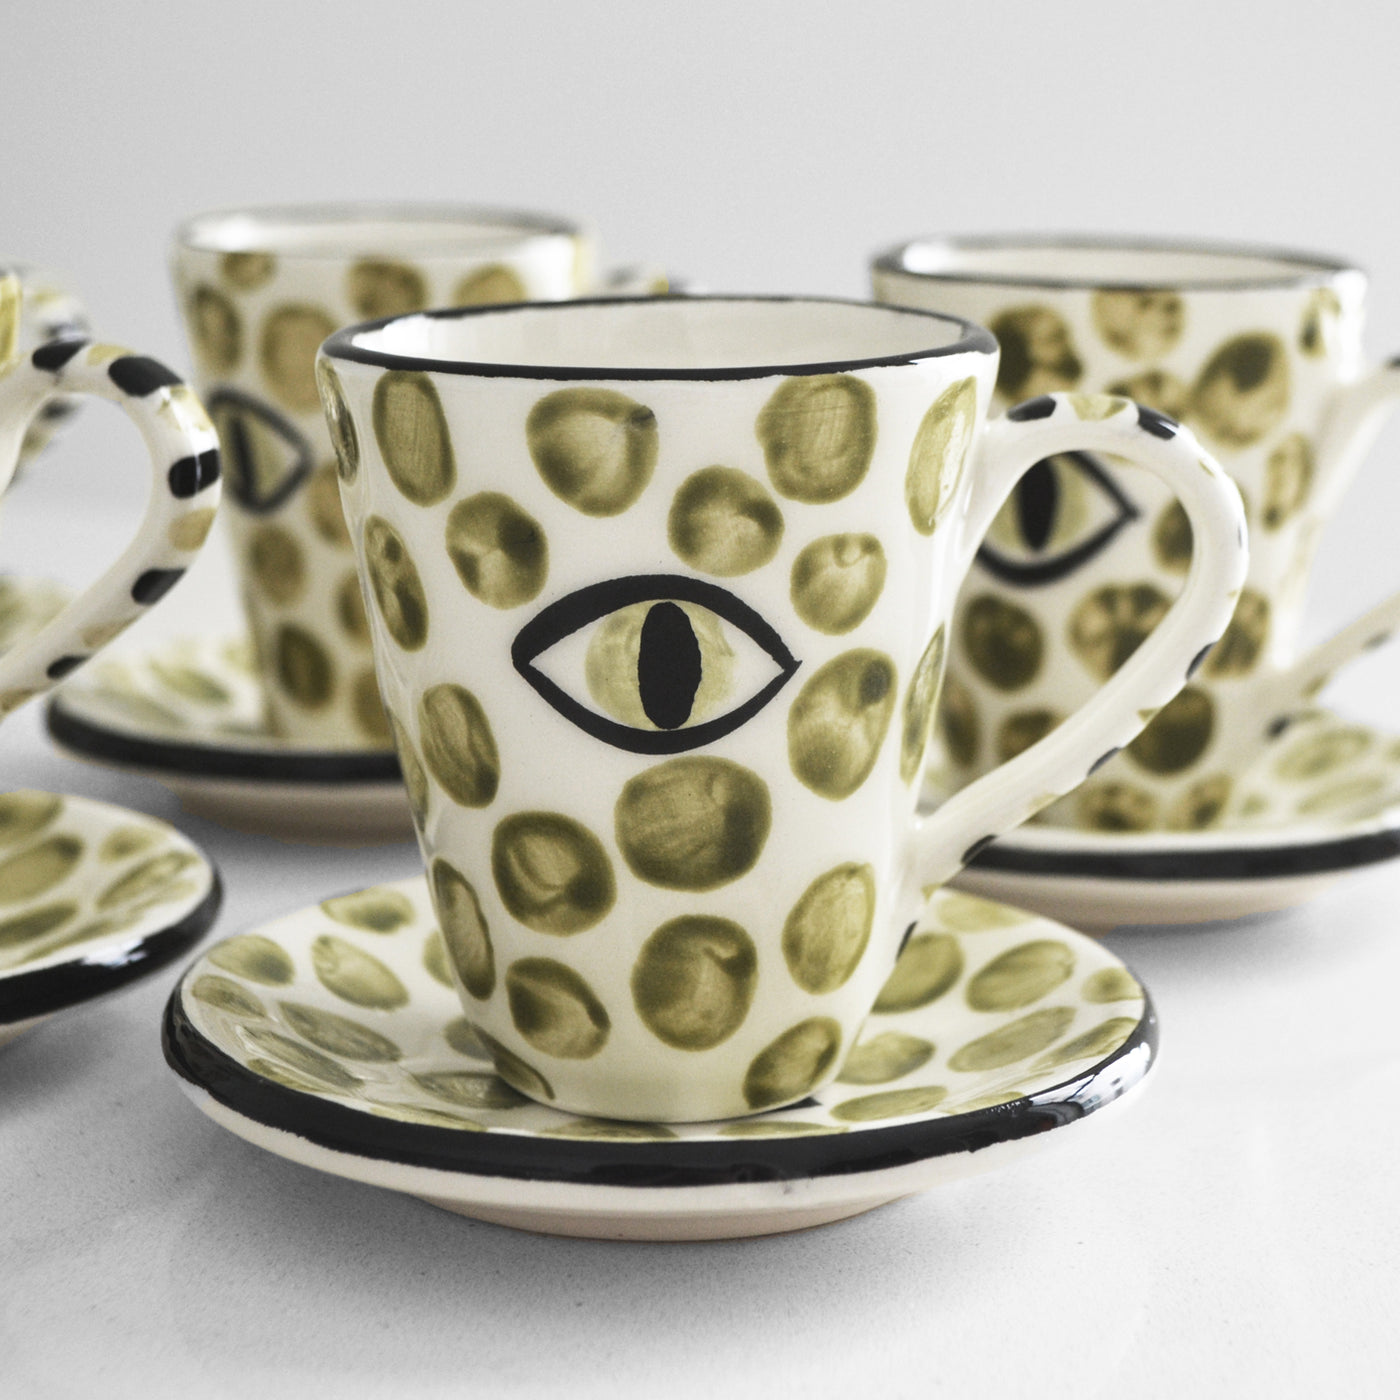 Dawn Polka Dots Espresso Cups Khaki (set of 6) - Ileana Makri